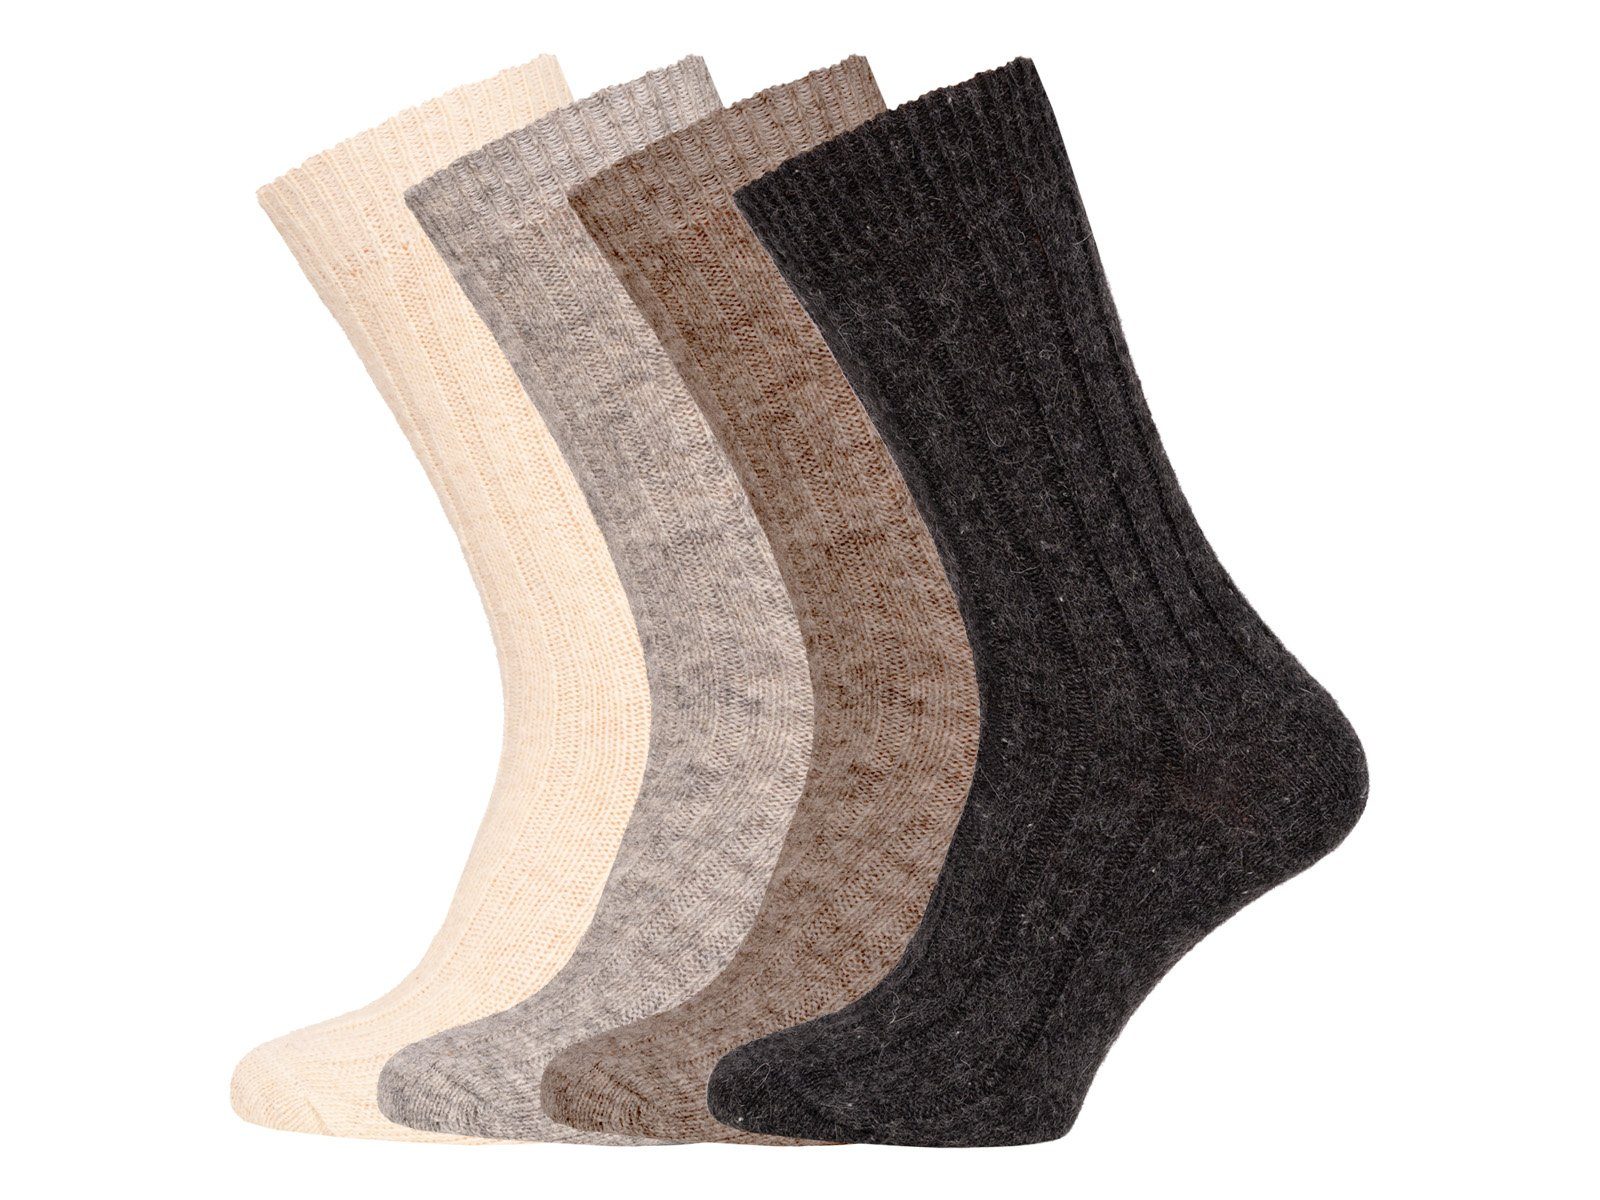 95% Wollsocken HomeOfSocks & Schurwolle) Socken aus Anthrazit (Alpakawolle Wolle